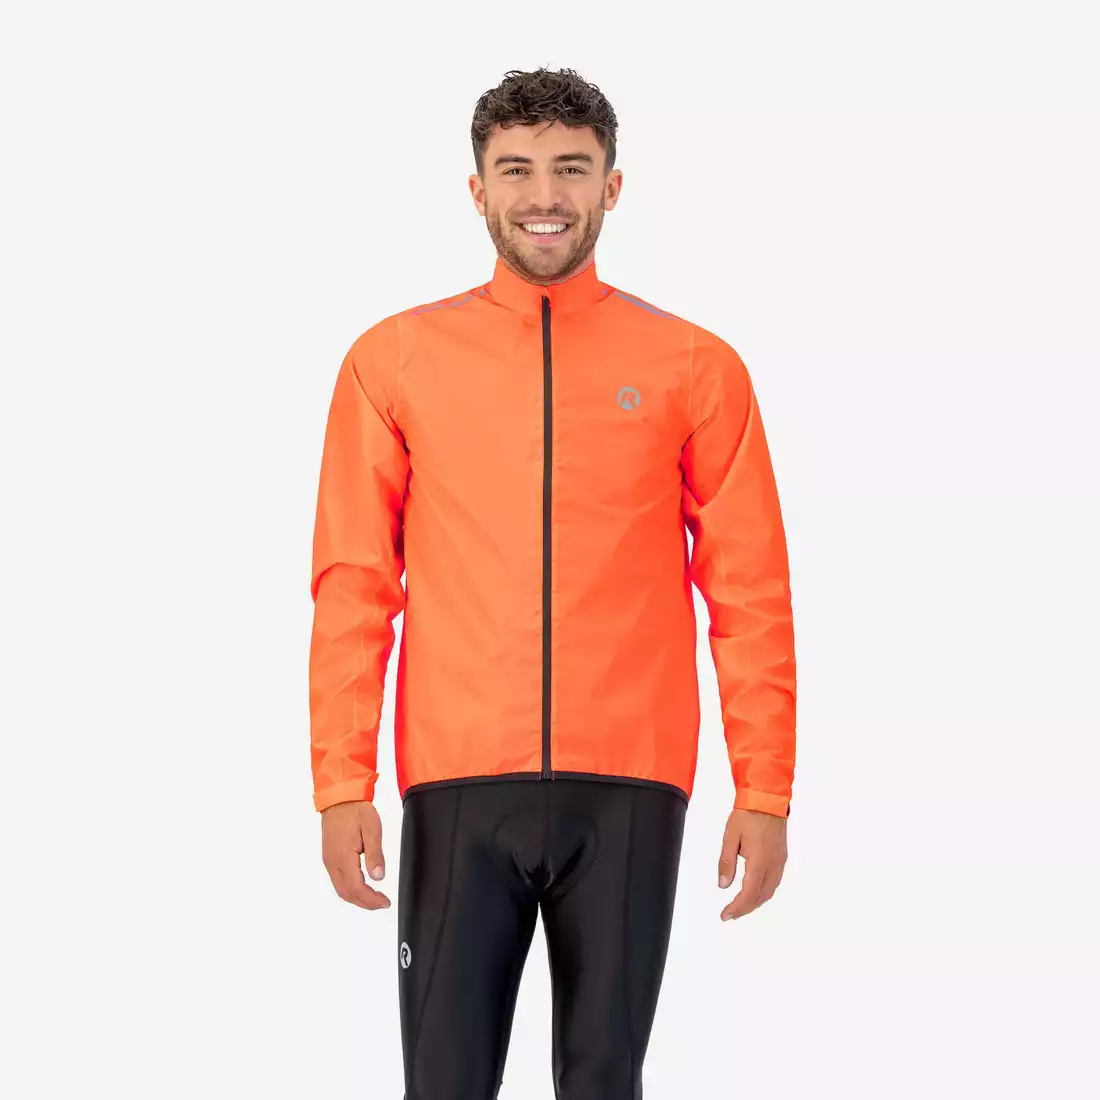 ROGELLI CORE jachetă de ploaie pentru ciclism pentru bărbați Portocale